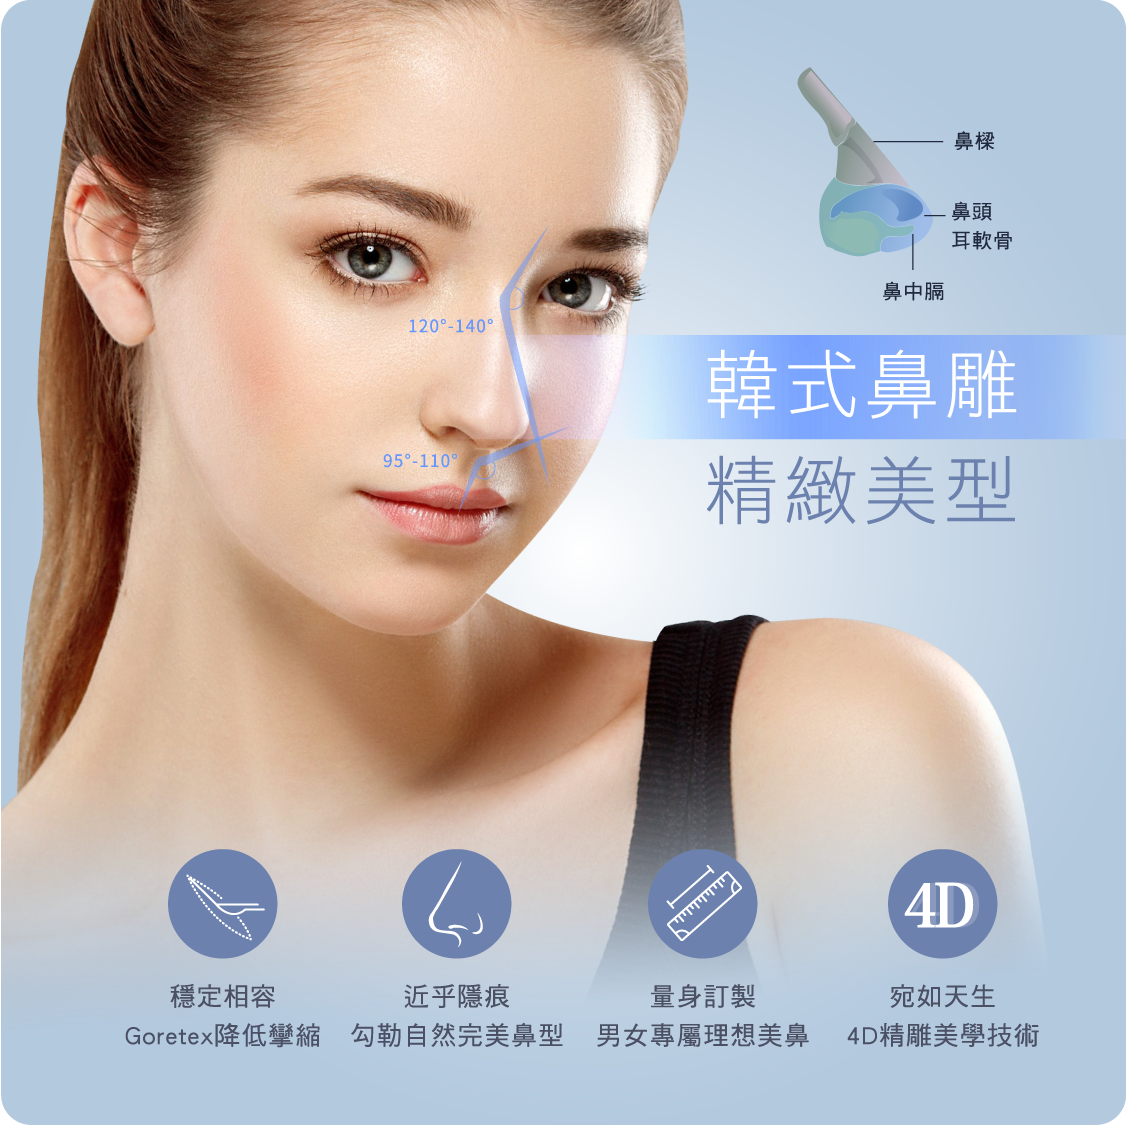 台北、桃園晶華醫美三段結構式隆鼻手術推薦  三段結構式隆鼻懶人包